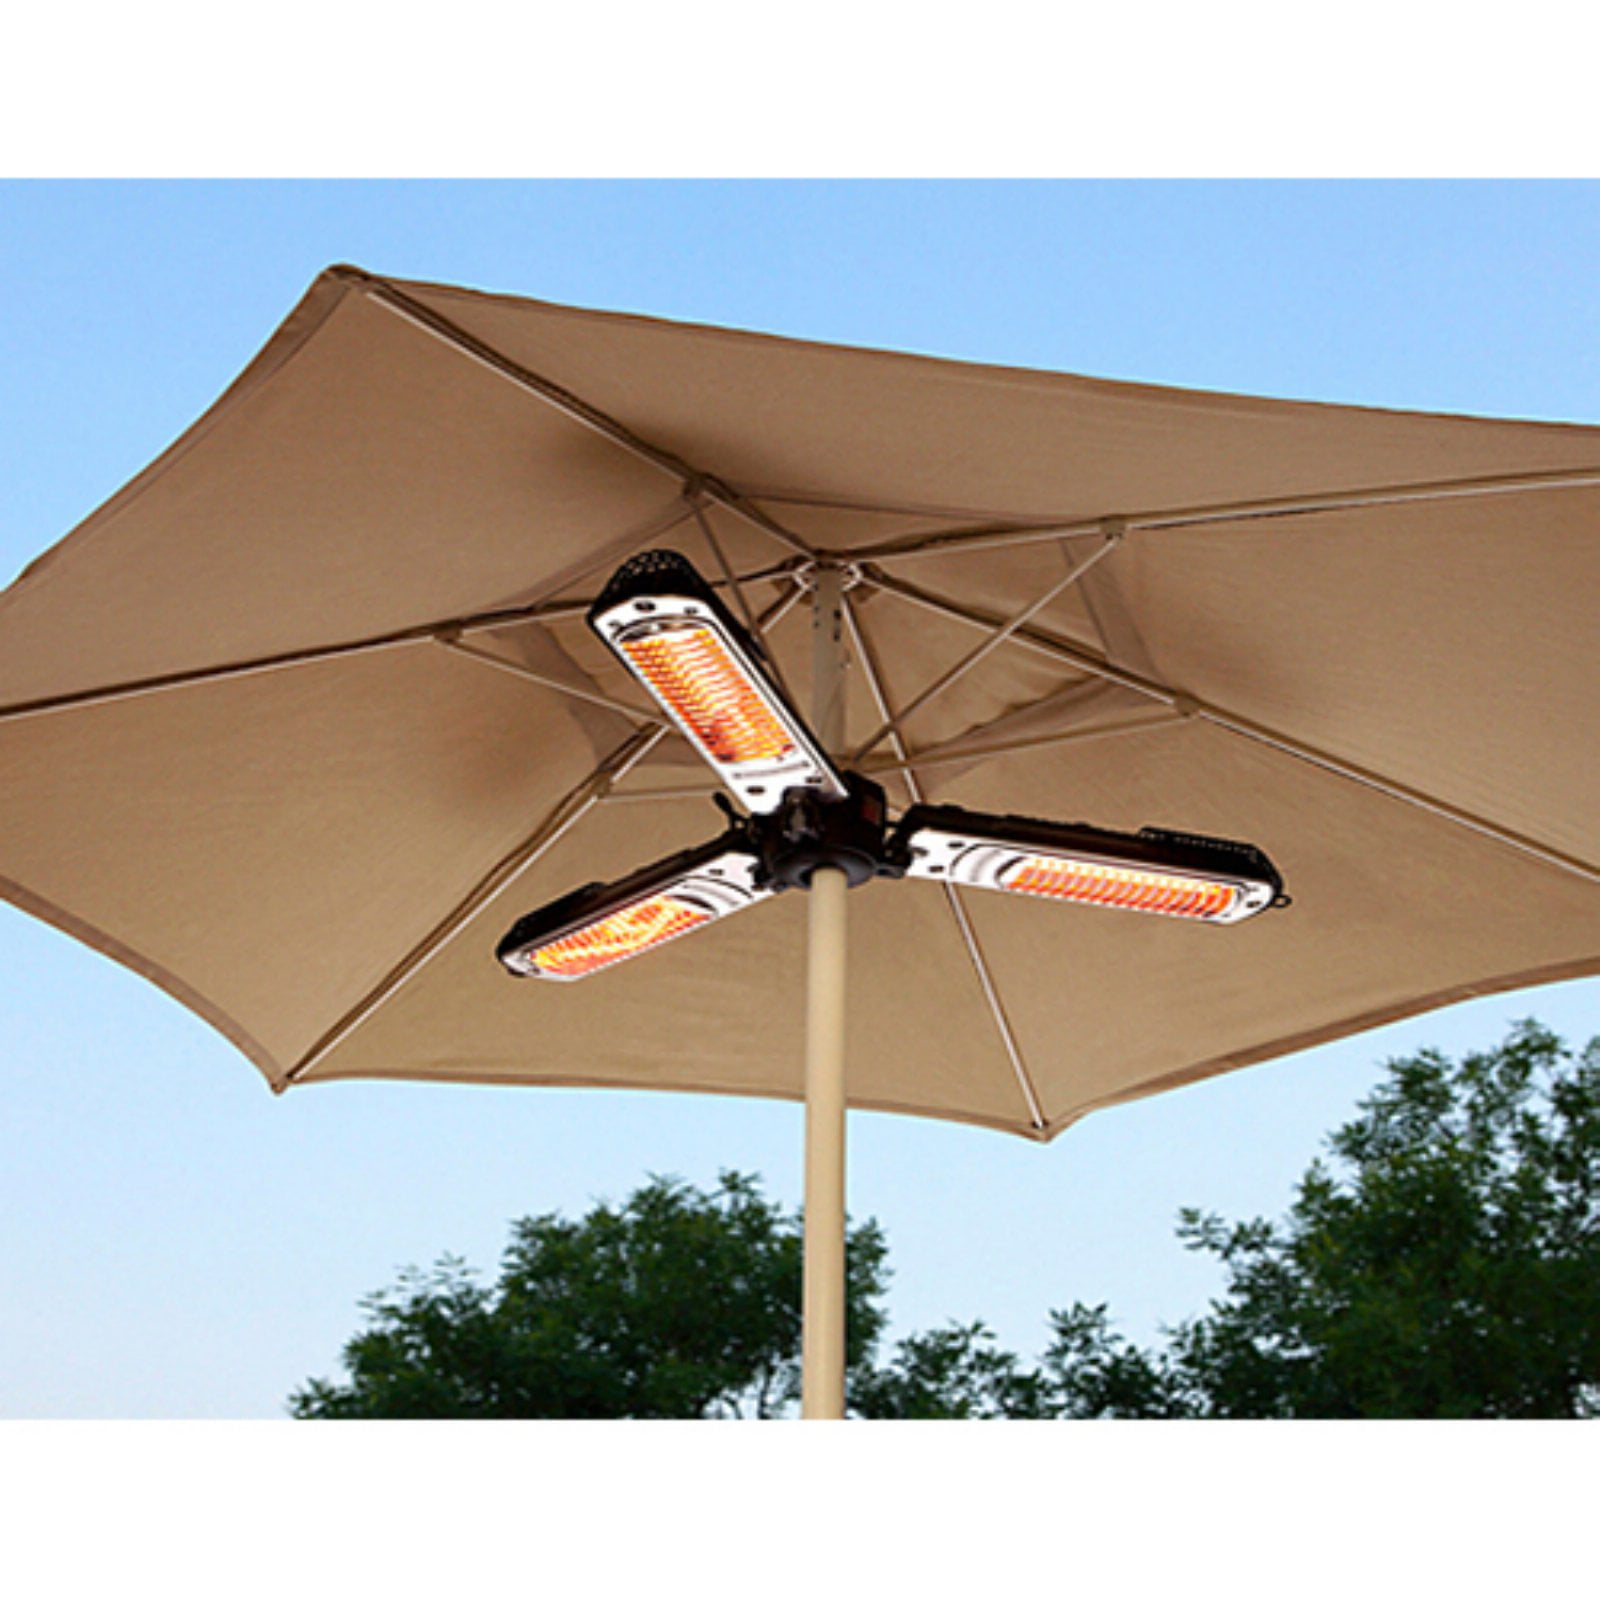 Az Patio Heaters Indoor Outdoor, Electric Patio Parasol Umbrella Heater